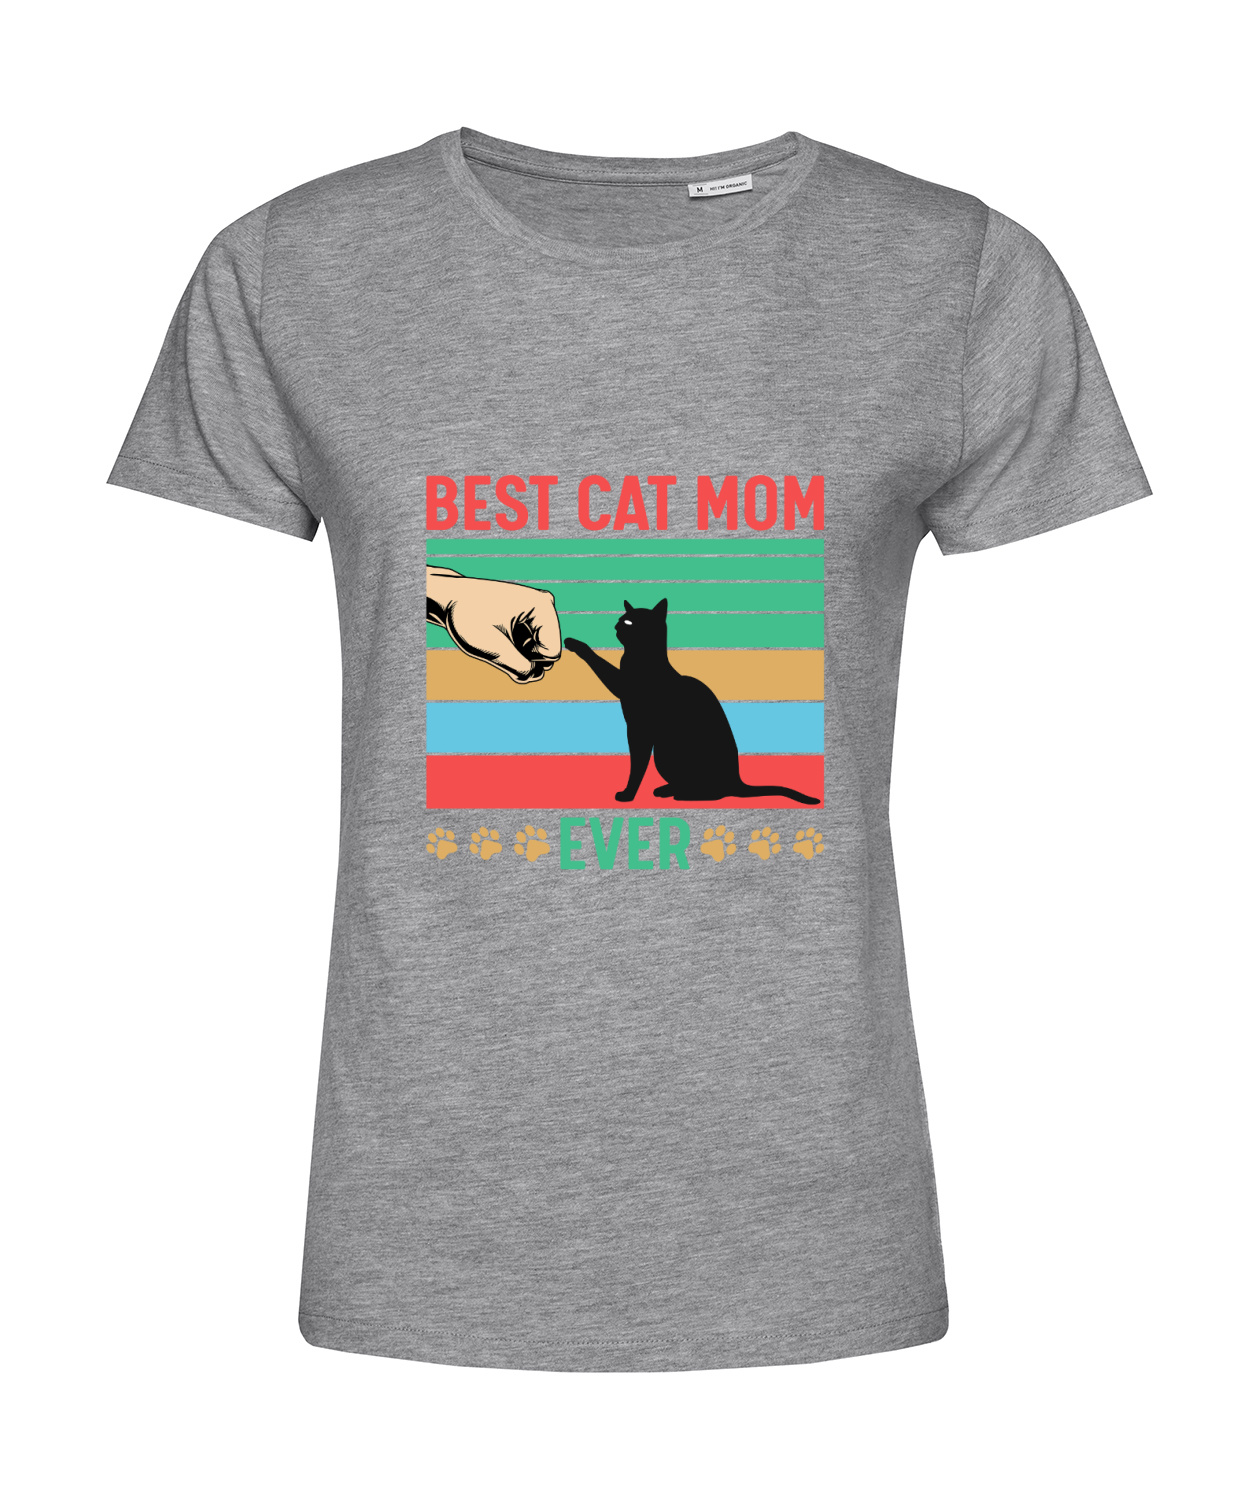 Nachhaltiges T-Shirt Damen Katzen - Best Cat Mom ever